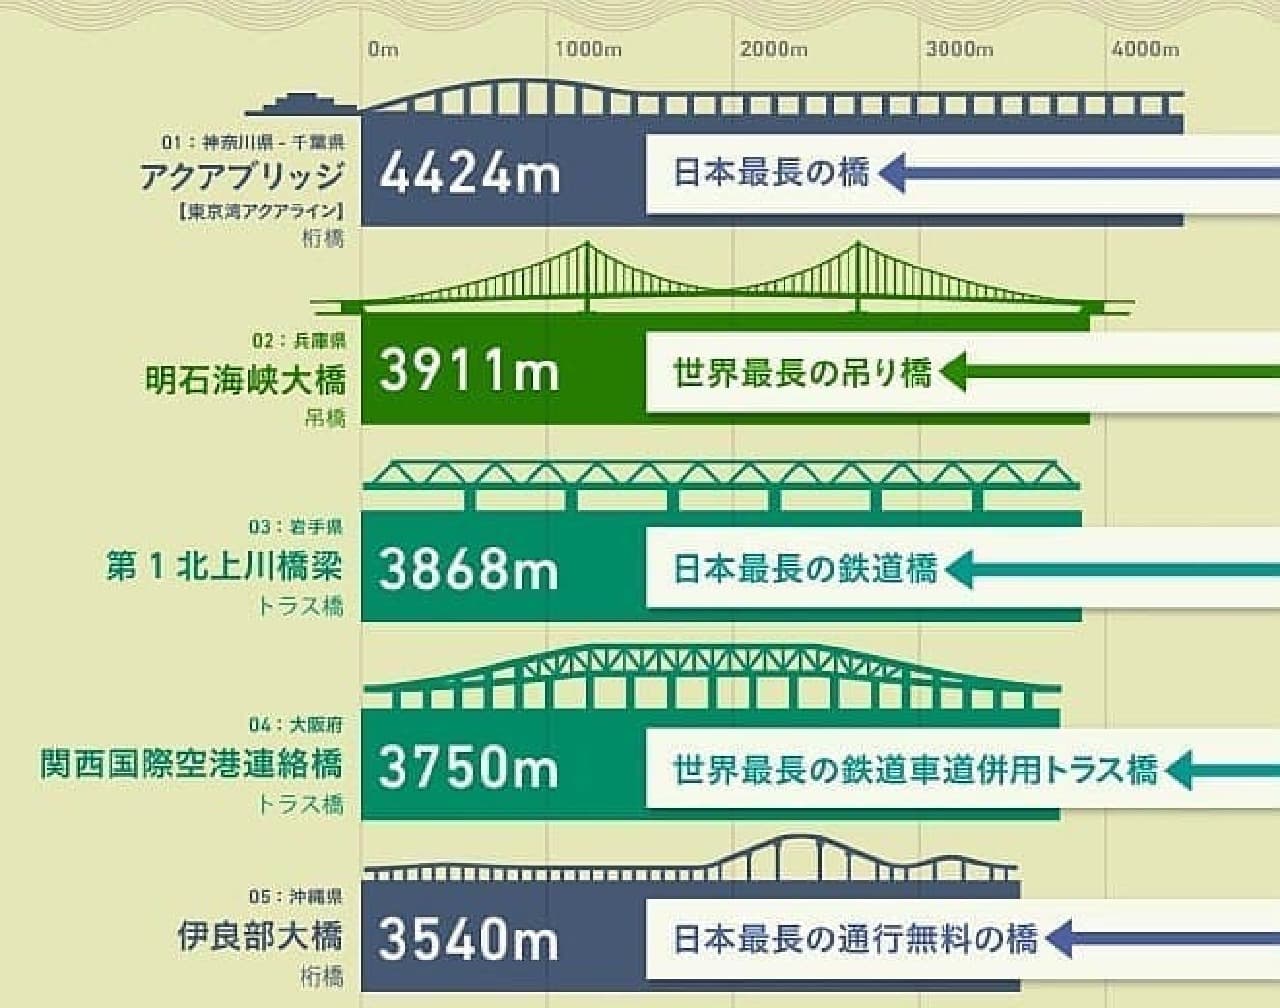 インフォグラフィック「日本の長い橋トップ20」